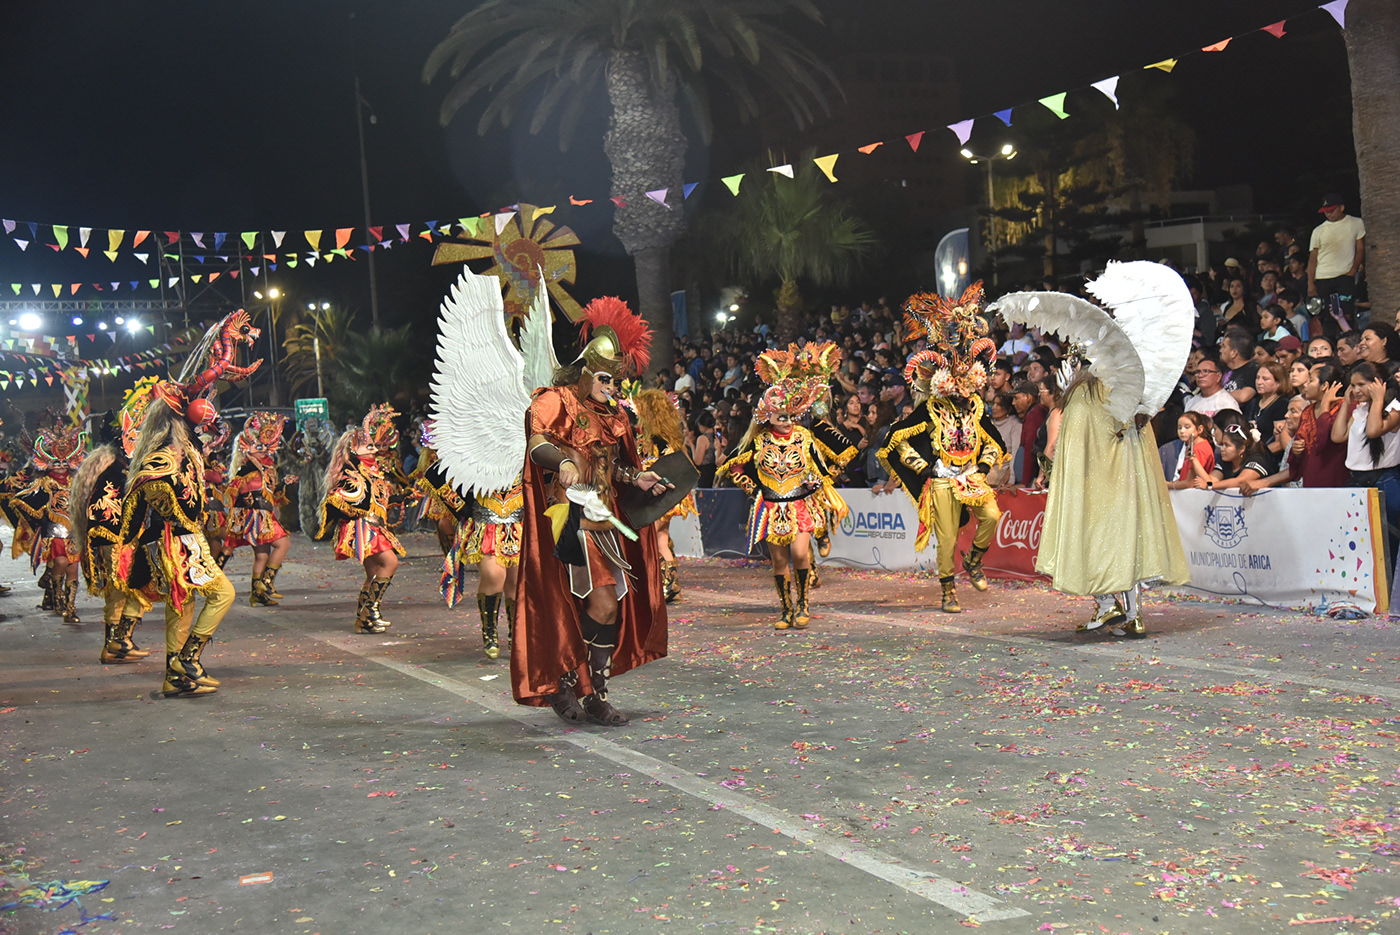 Tirana arica Carnaval peru bolivia janeiro rio